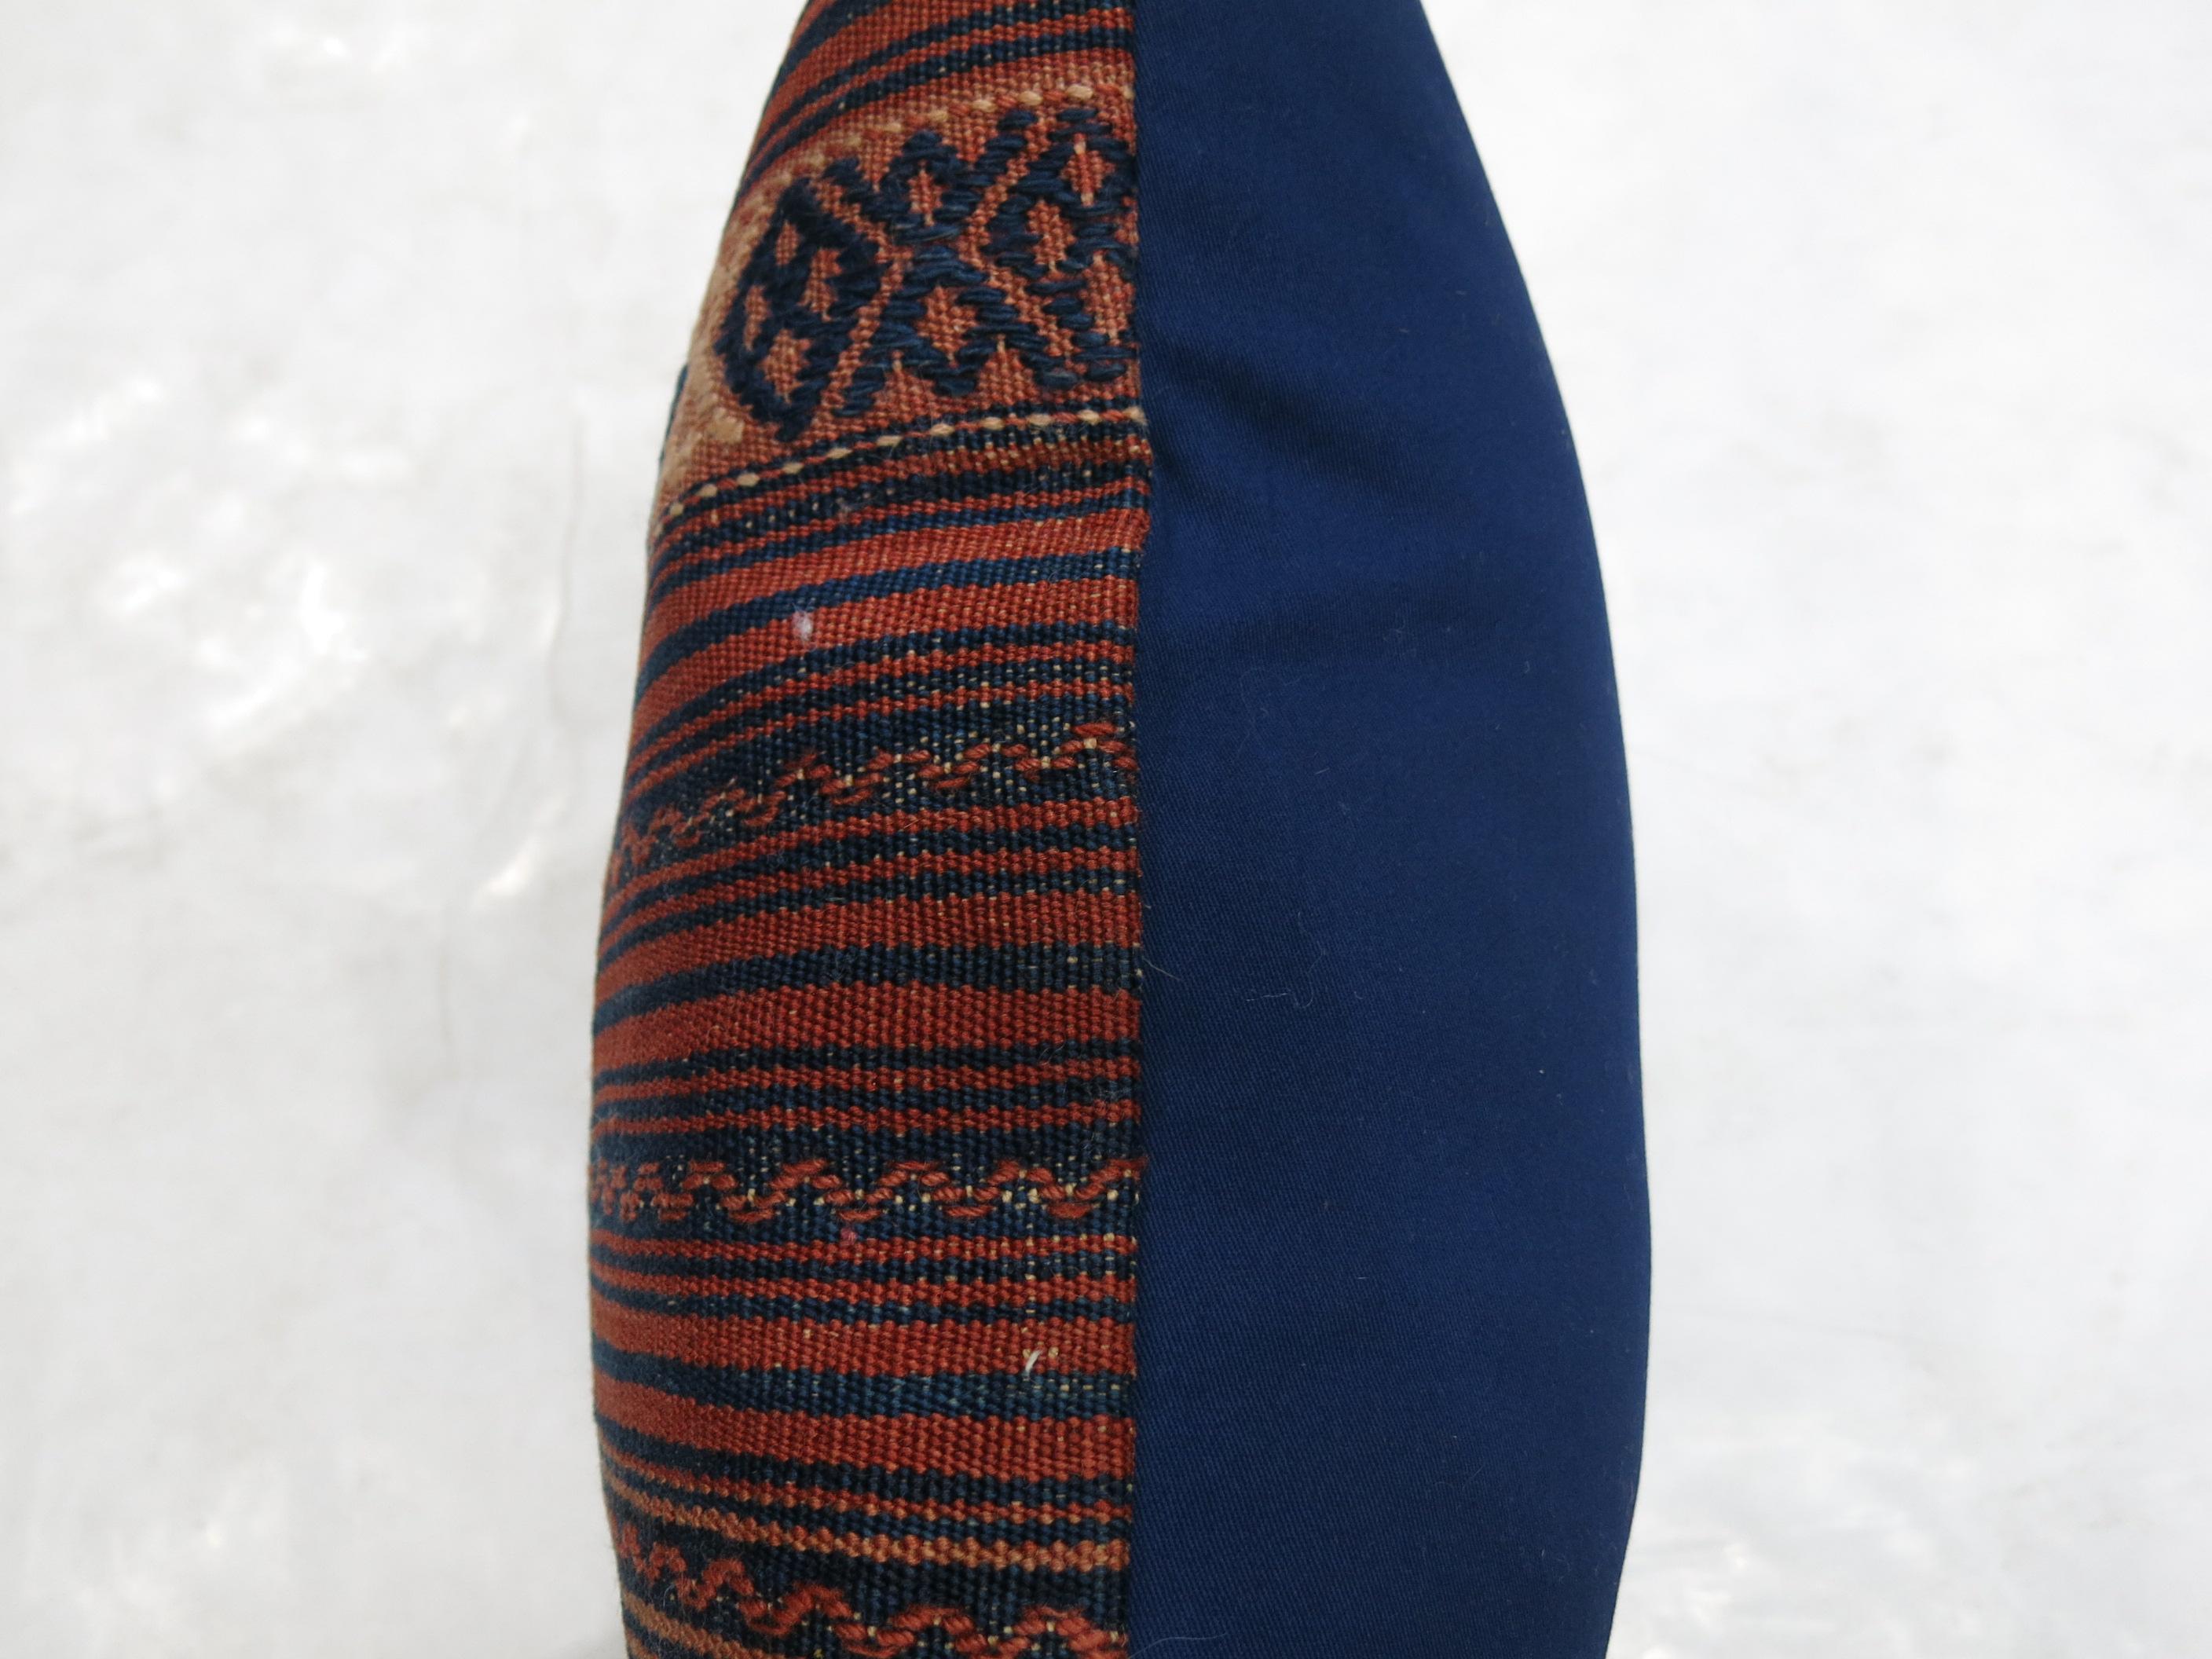 Kilim turc vintage en rouge rouillé et accents bleus.

Mesures : 18